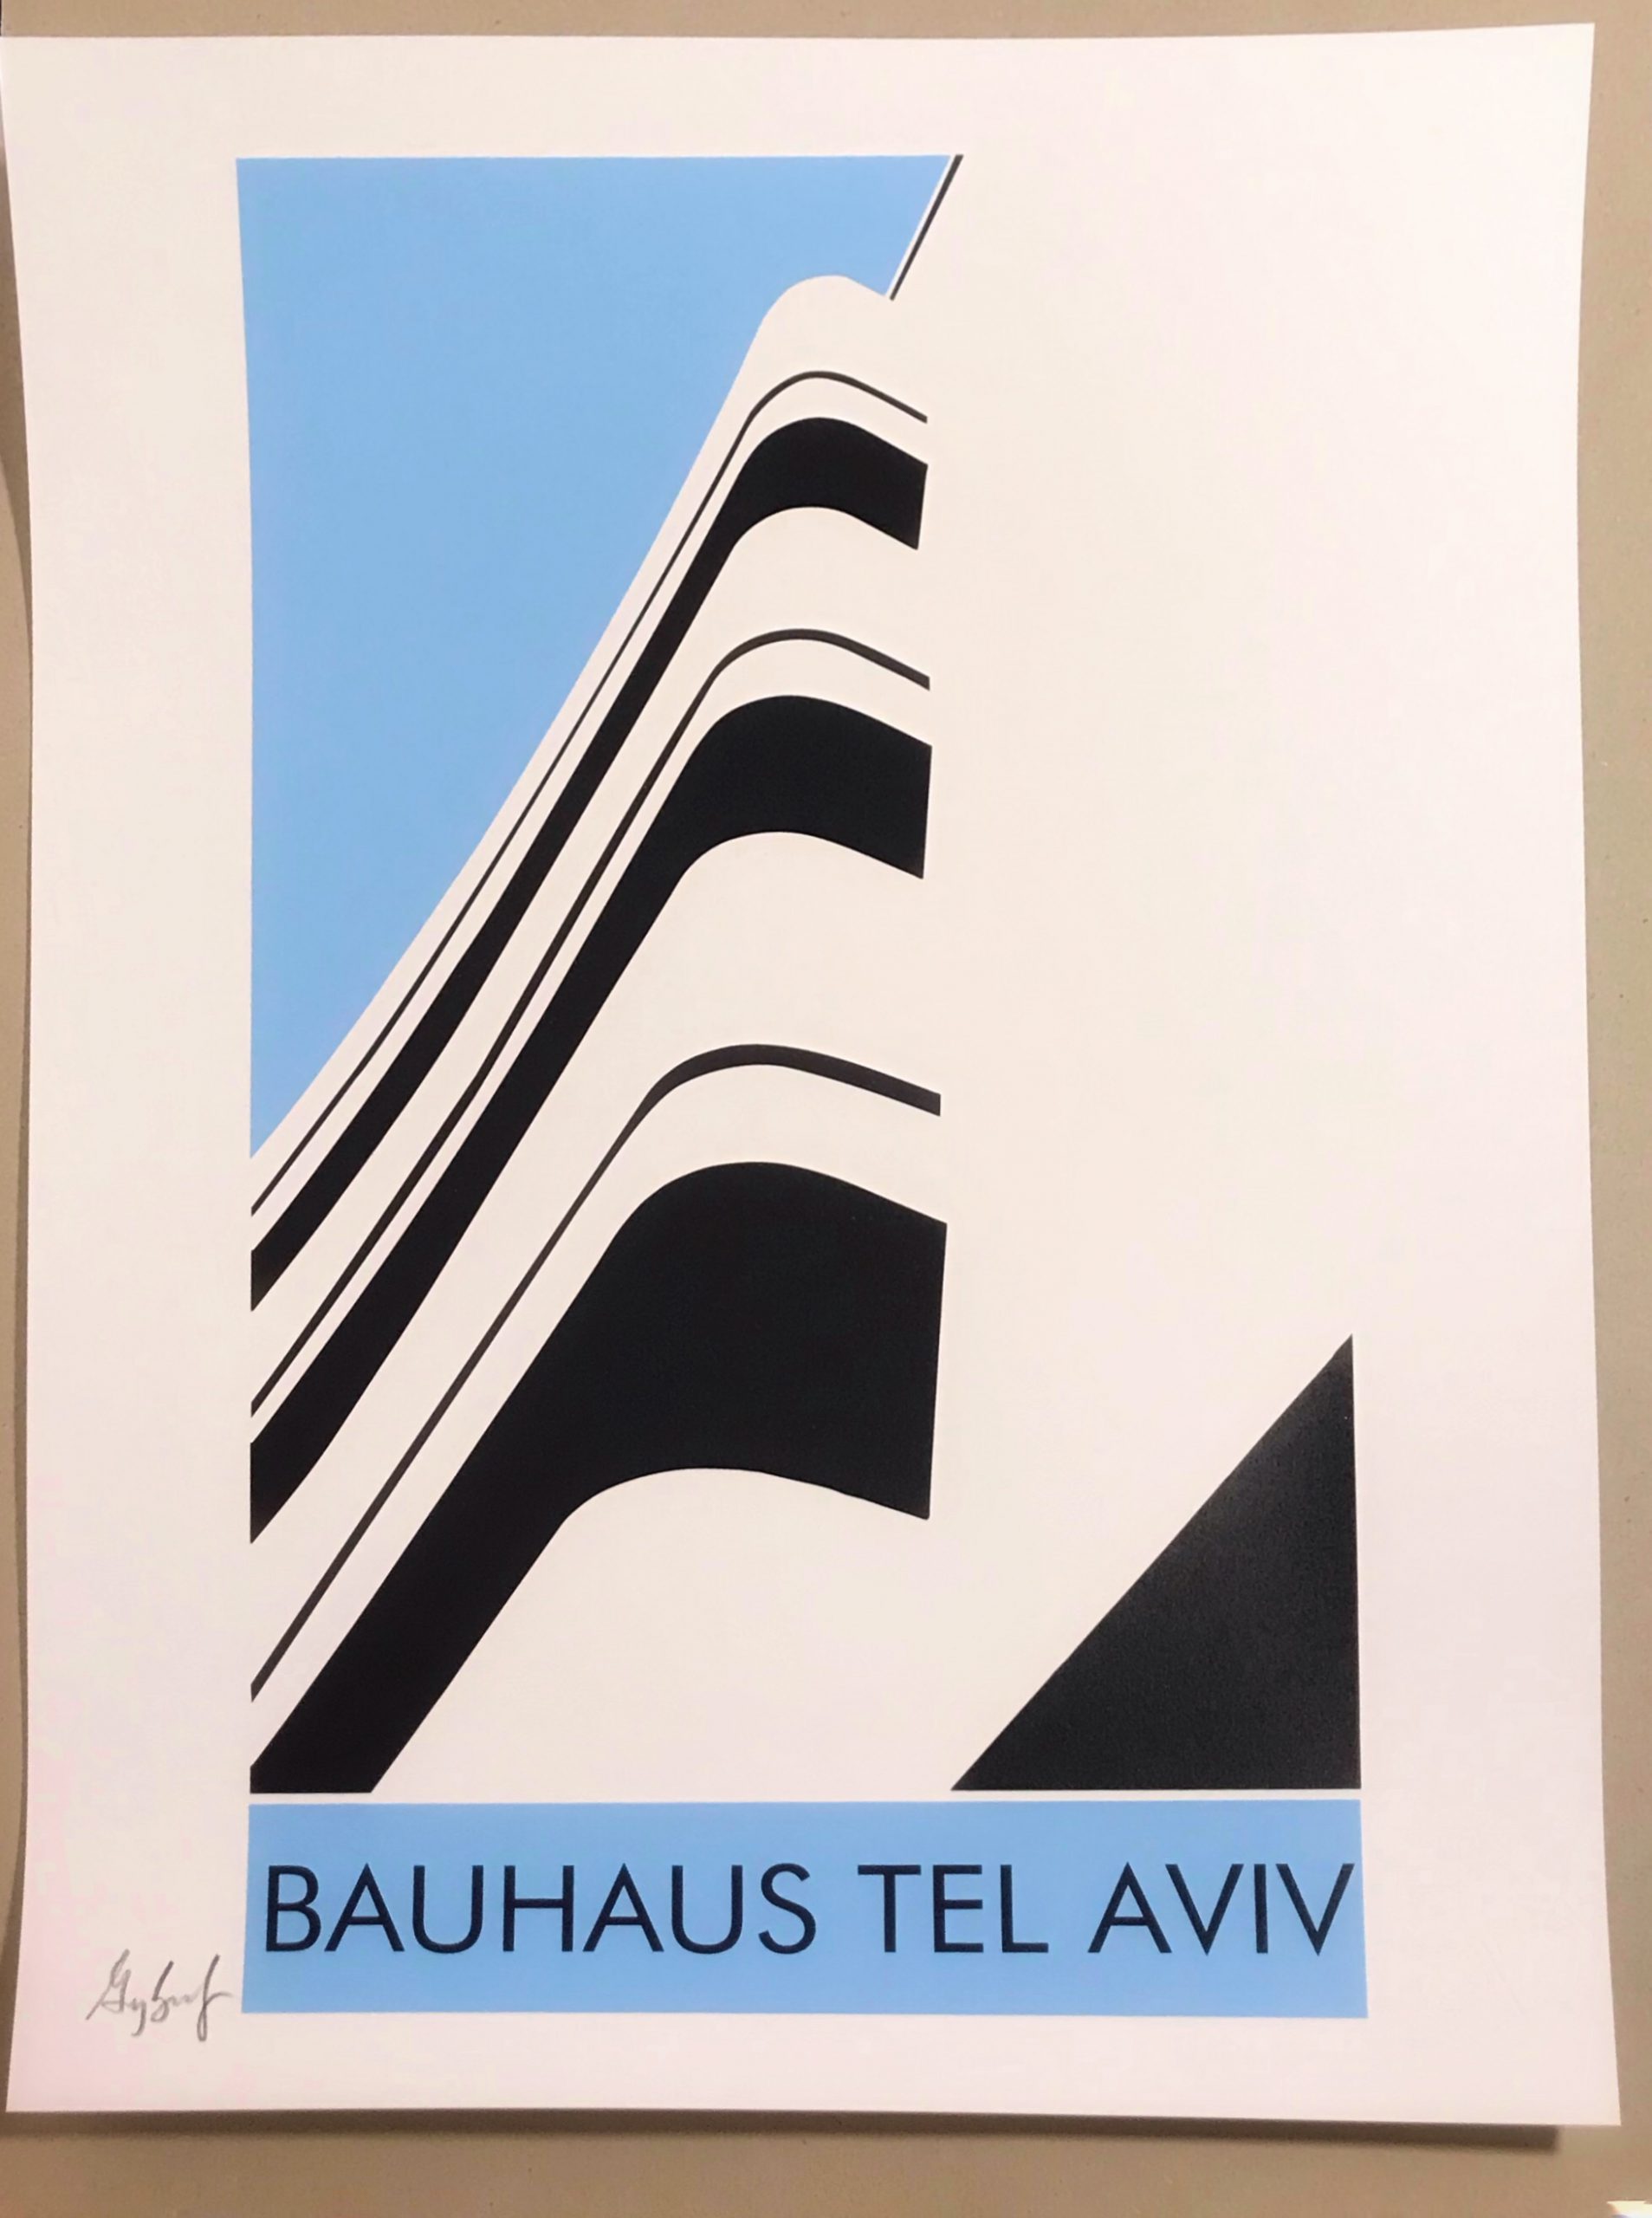 Blue Bauhaus Tel Aviv